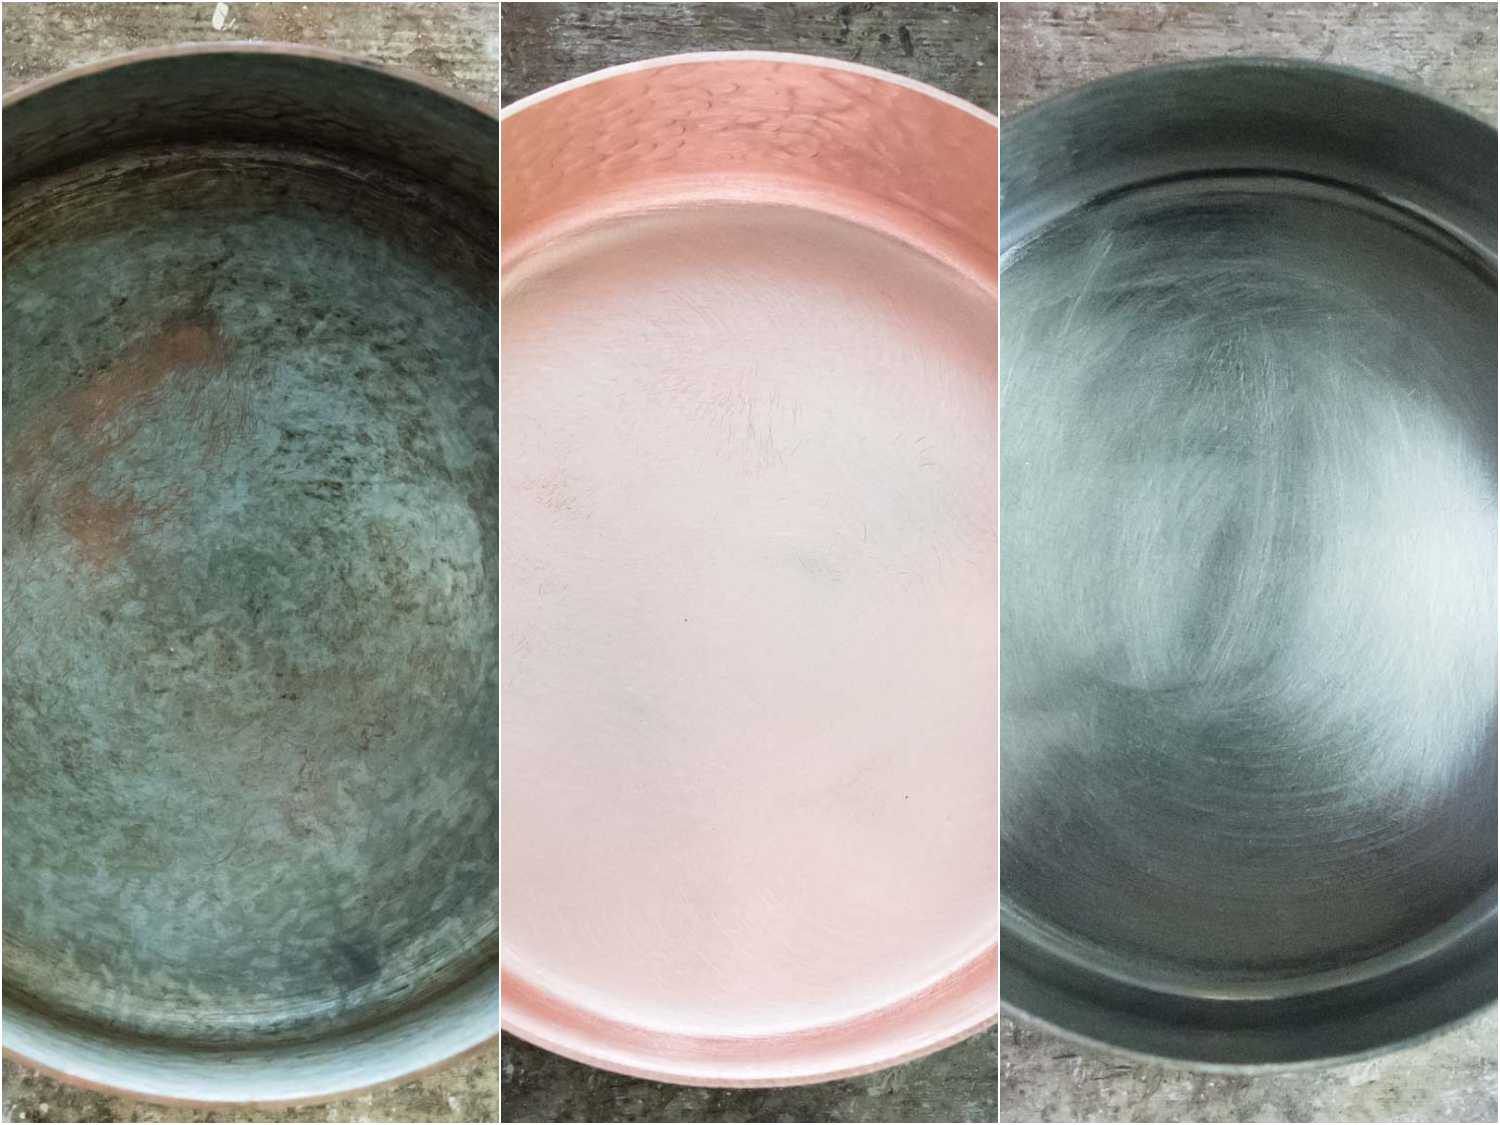 铜制炊具覆锡的并列镜头:旧的破损锡衬;剥光铜;新锡衬里